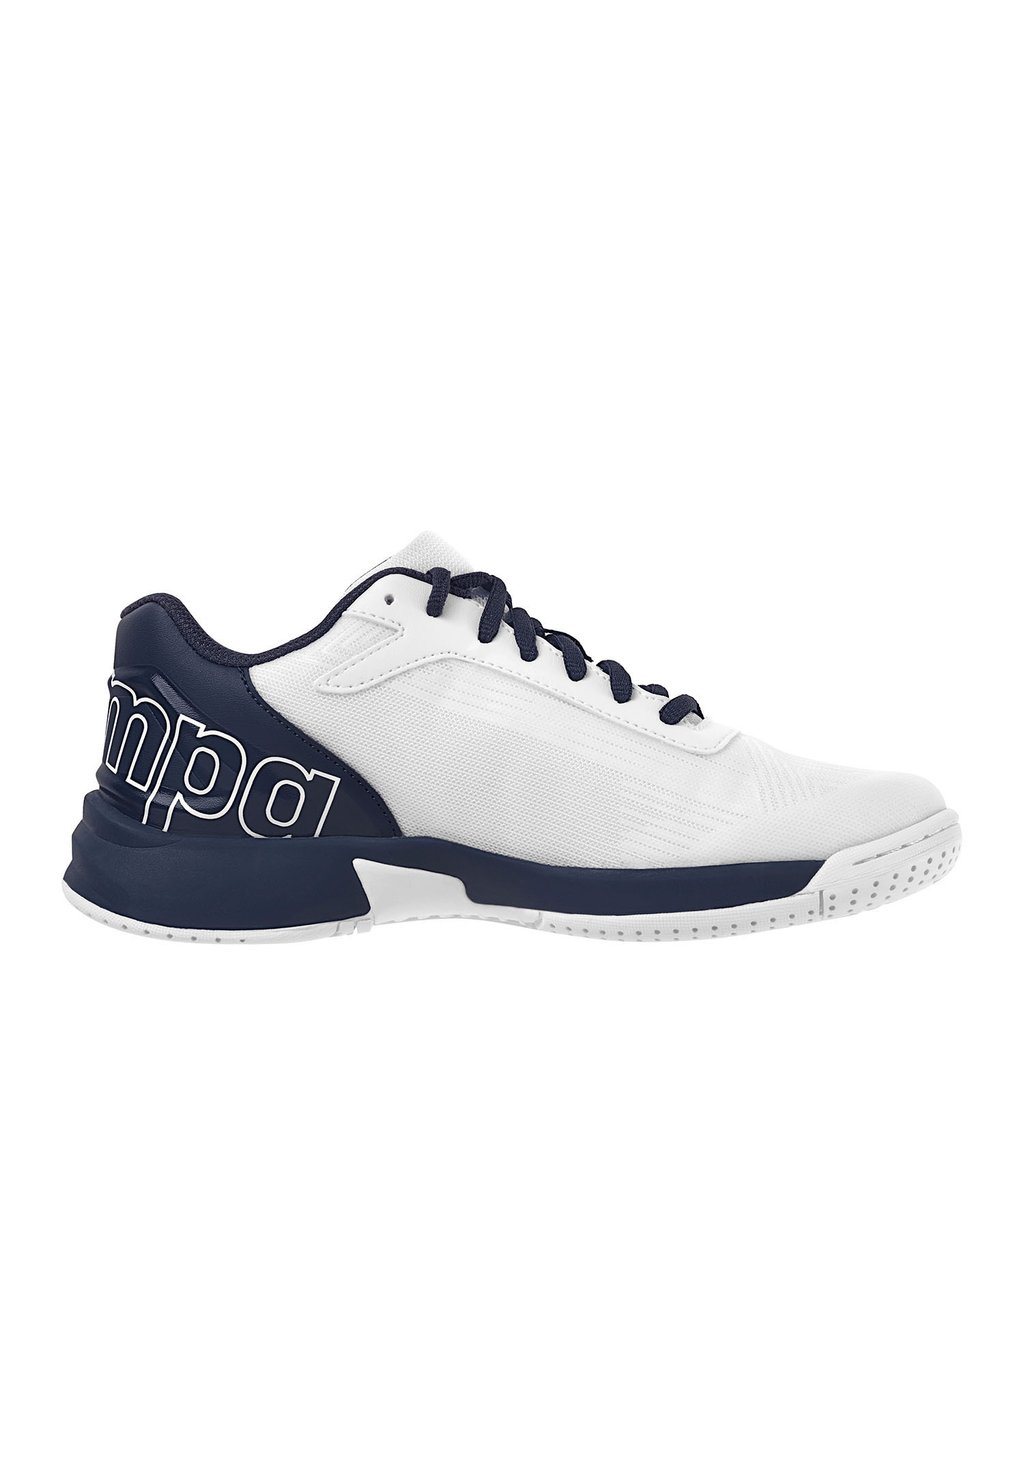 Прогулочная обувь Kempa, цвет white navy